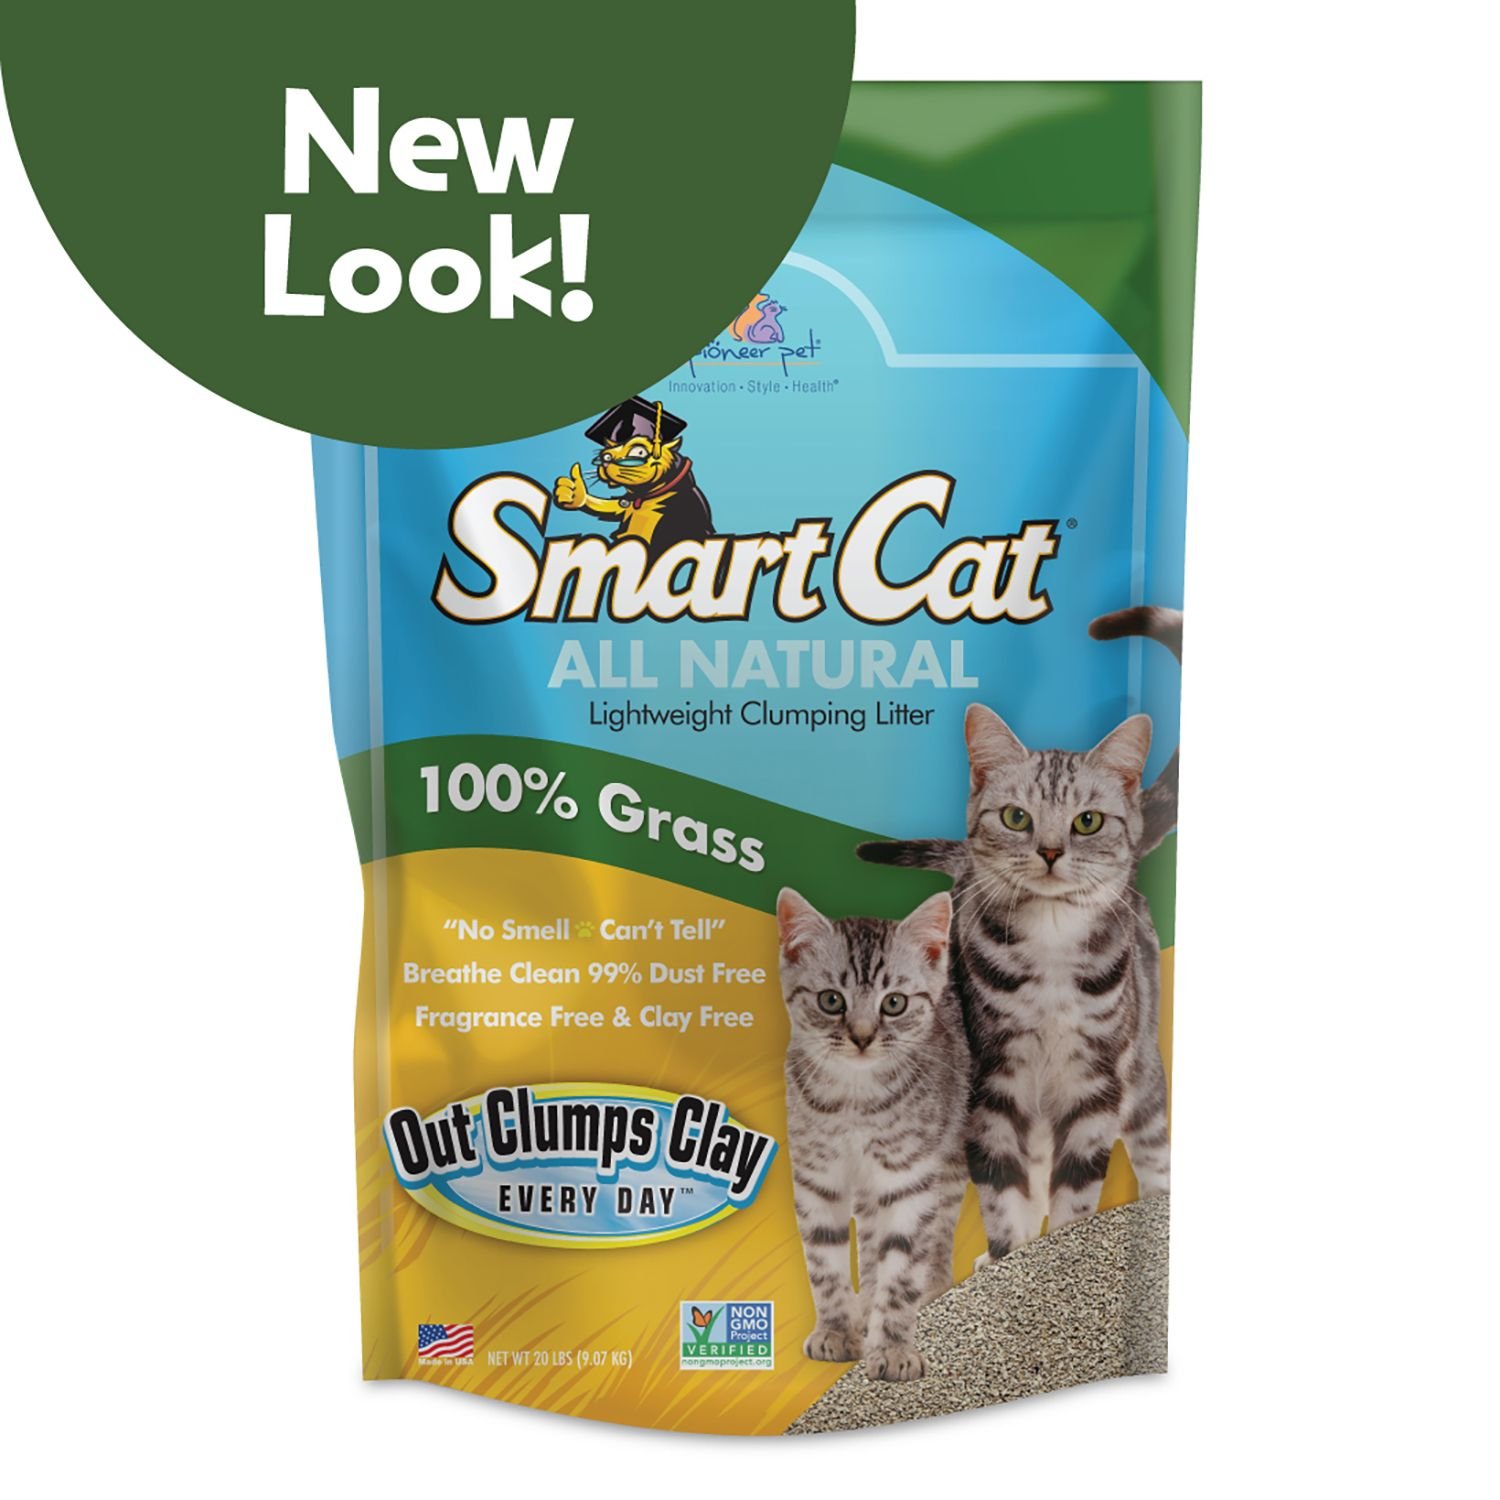 Pioneer Pet SmartCat All Natural Cat Litter, 5lb bag